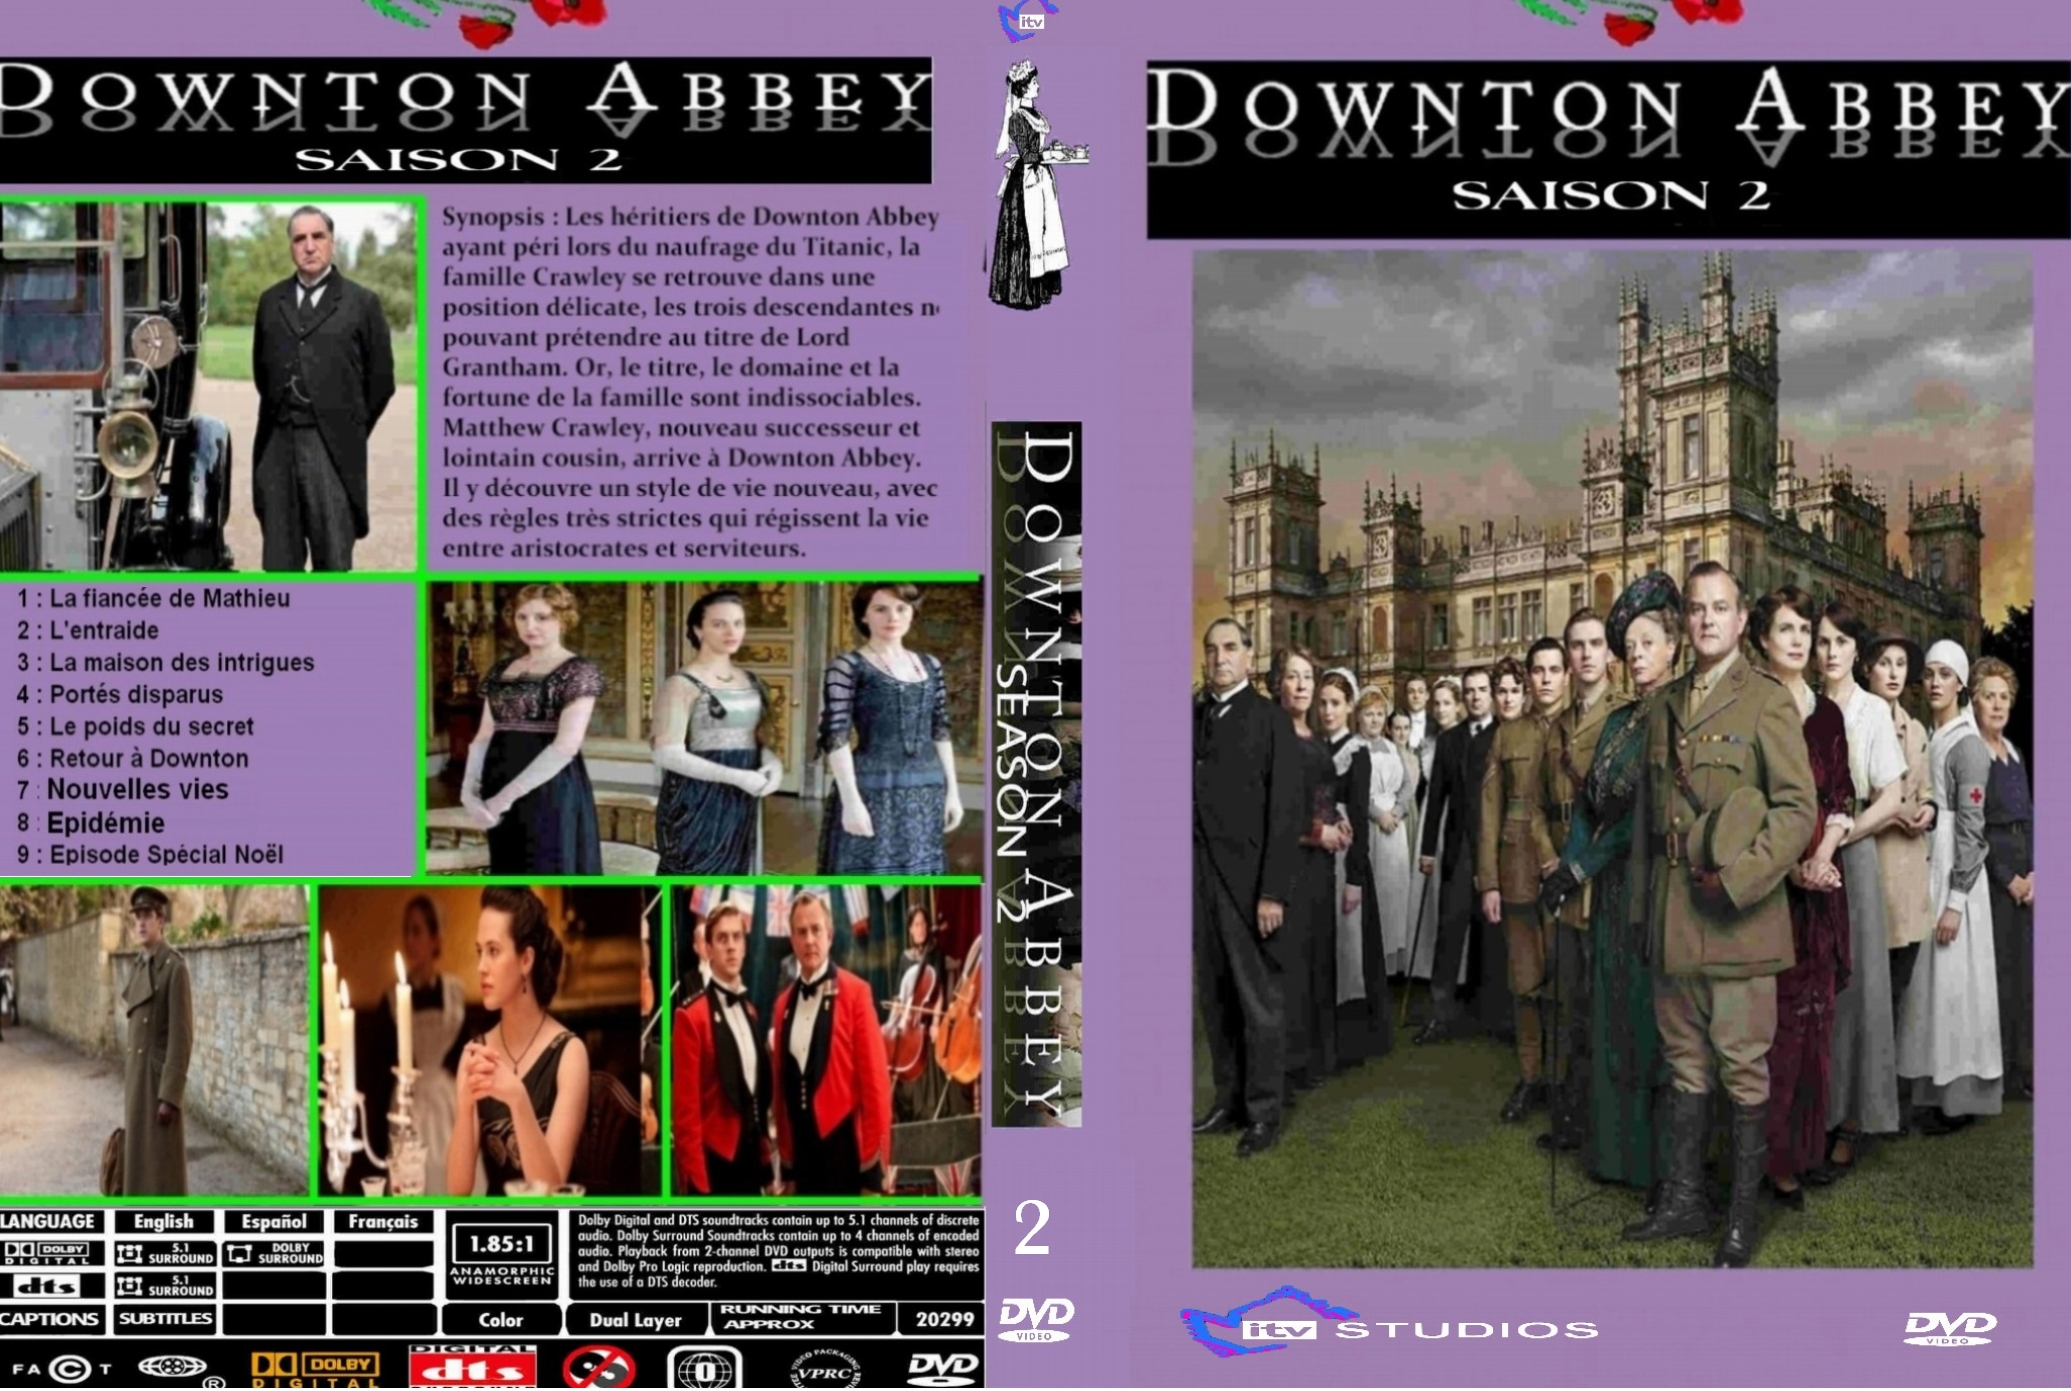 Jaquette DVD Downton Abbey Saison 2 custom